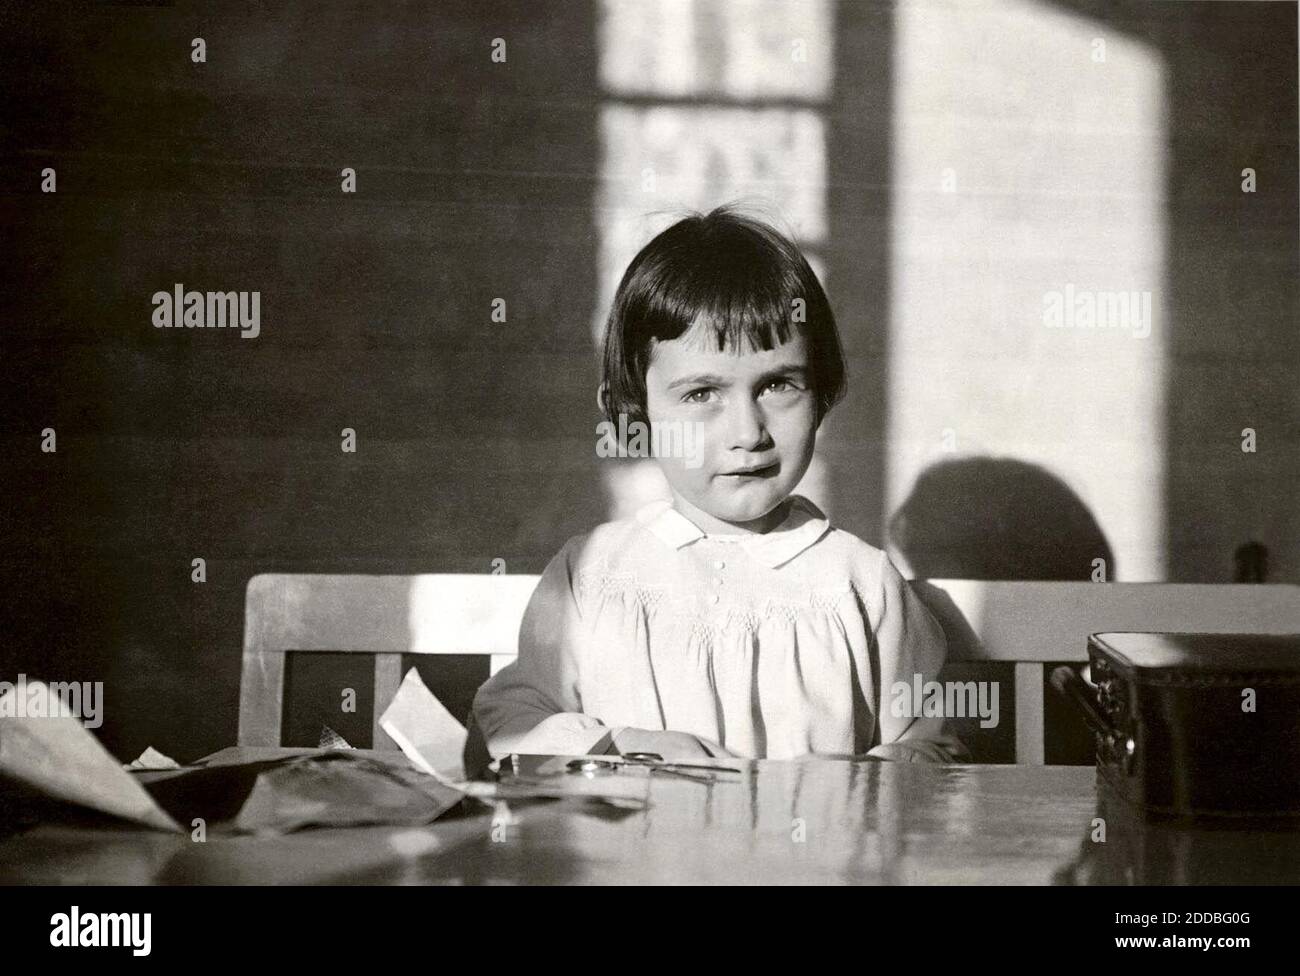 PAS DE FILM, PAS DE VIDÉO, PAS de TV, PAS DE DOCUMENTAIRE - Anne Frank à Francfort, 1932. Photo par photo gracieuseté d'Anne Frank Centre USA via Orlando Sentinel/KRT/ABACA. Banque D'Images